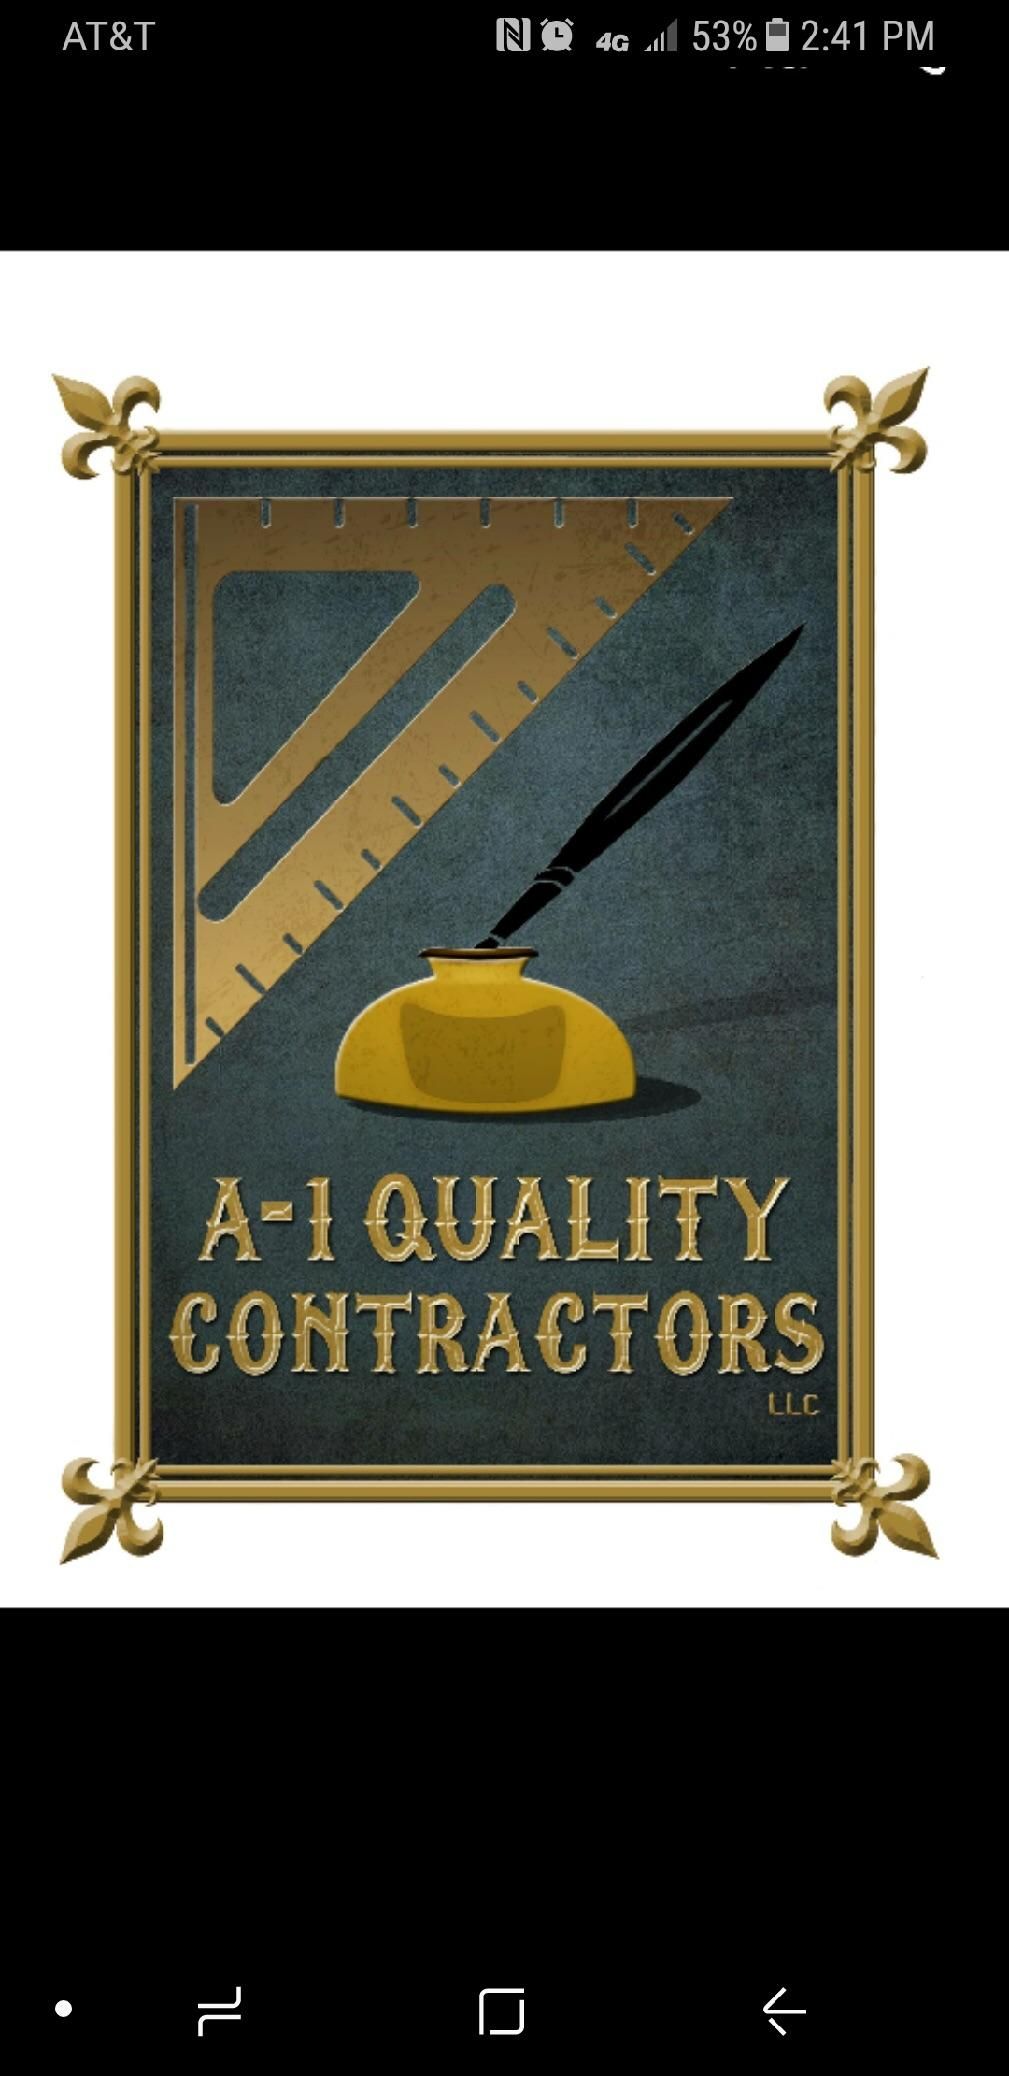 A 1 Quality Contractors